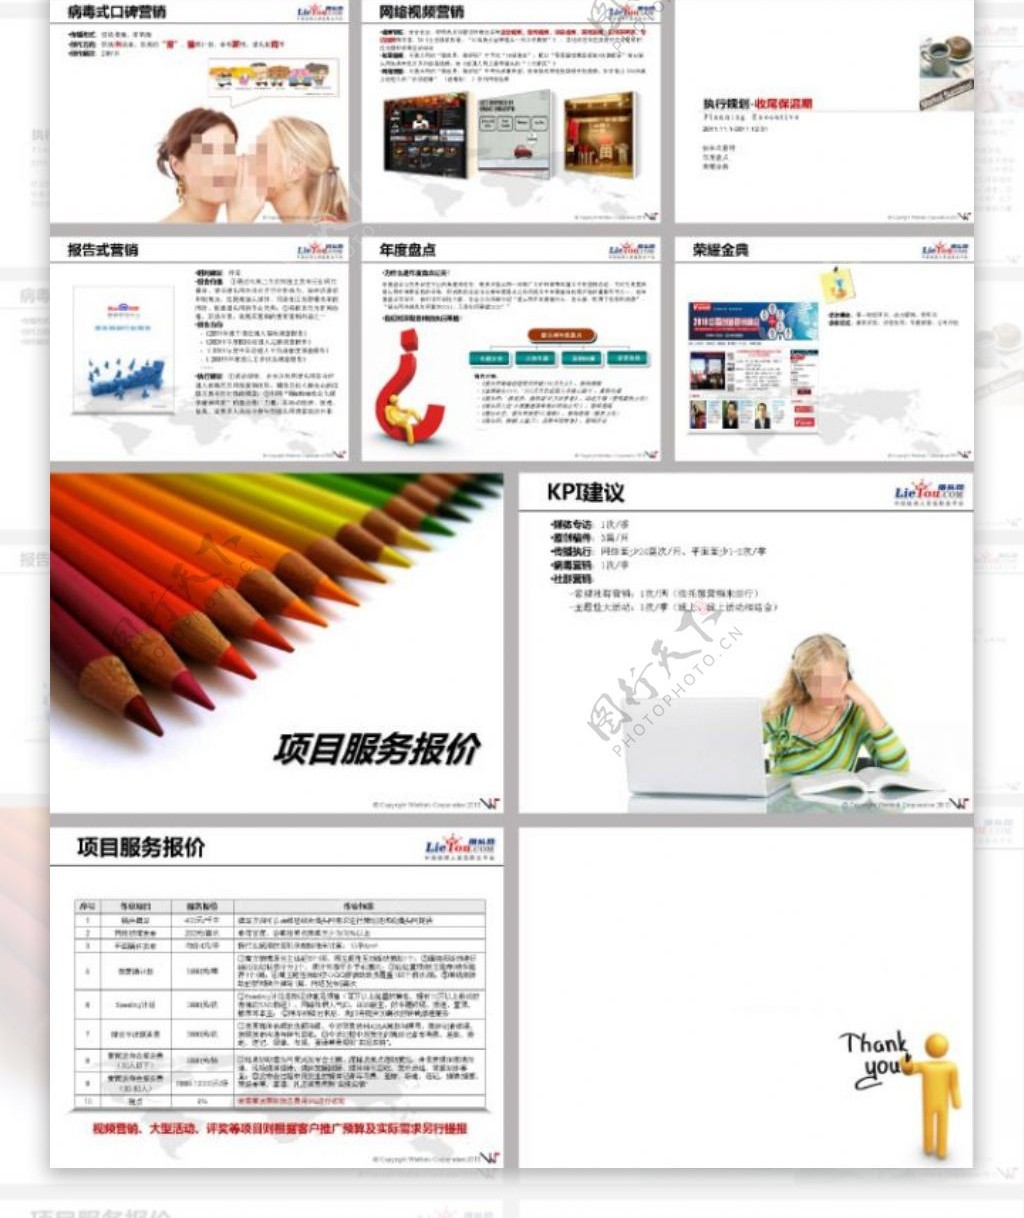 猎头网2011年度品牌整合营销方案ppt